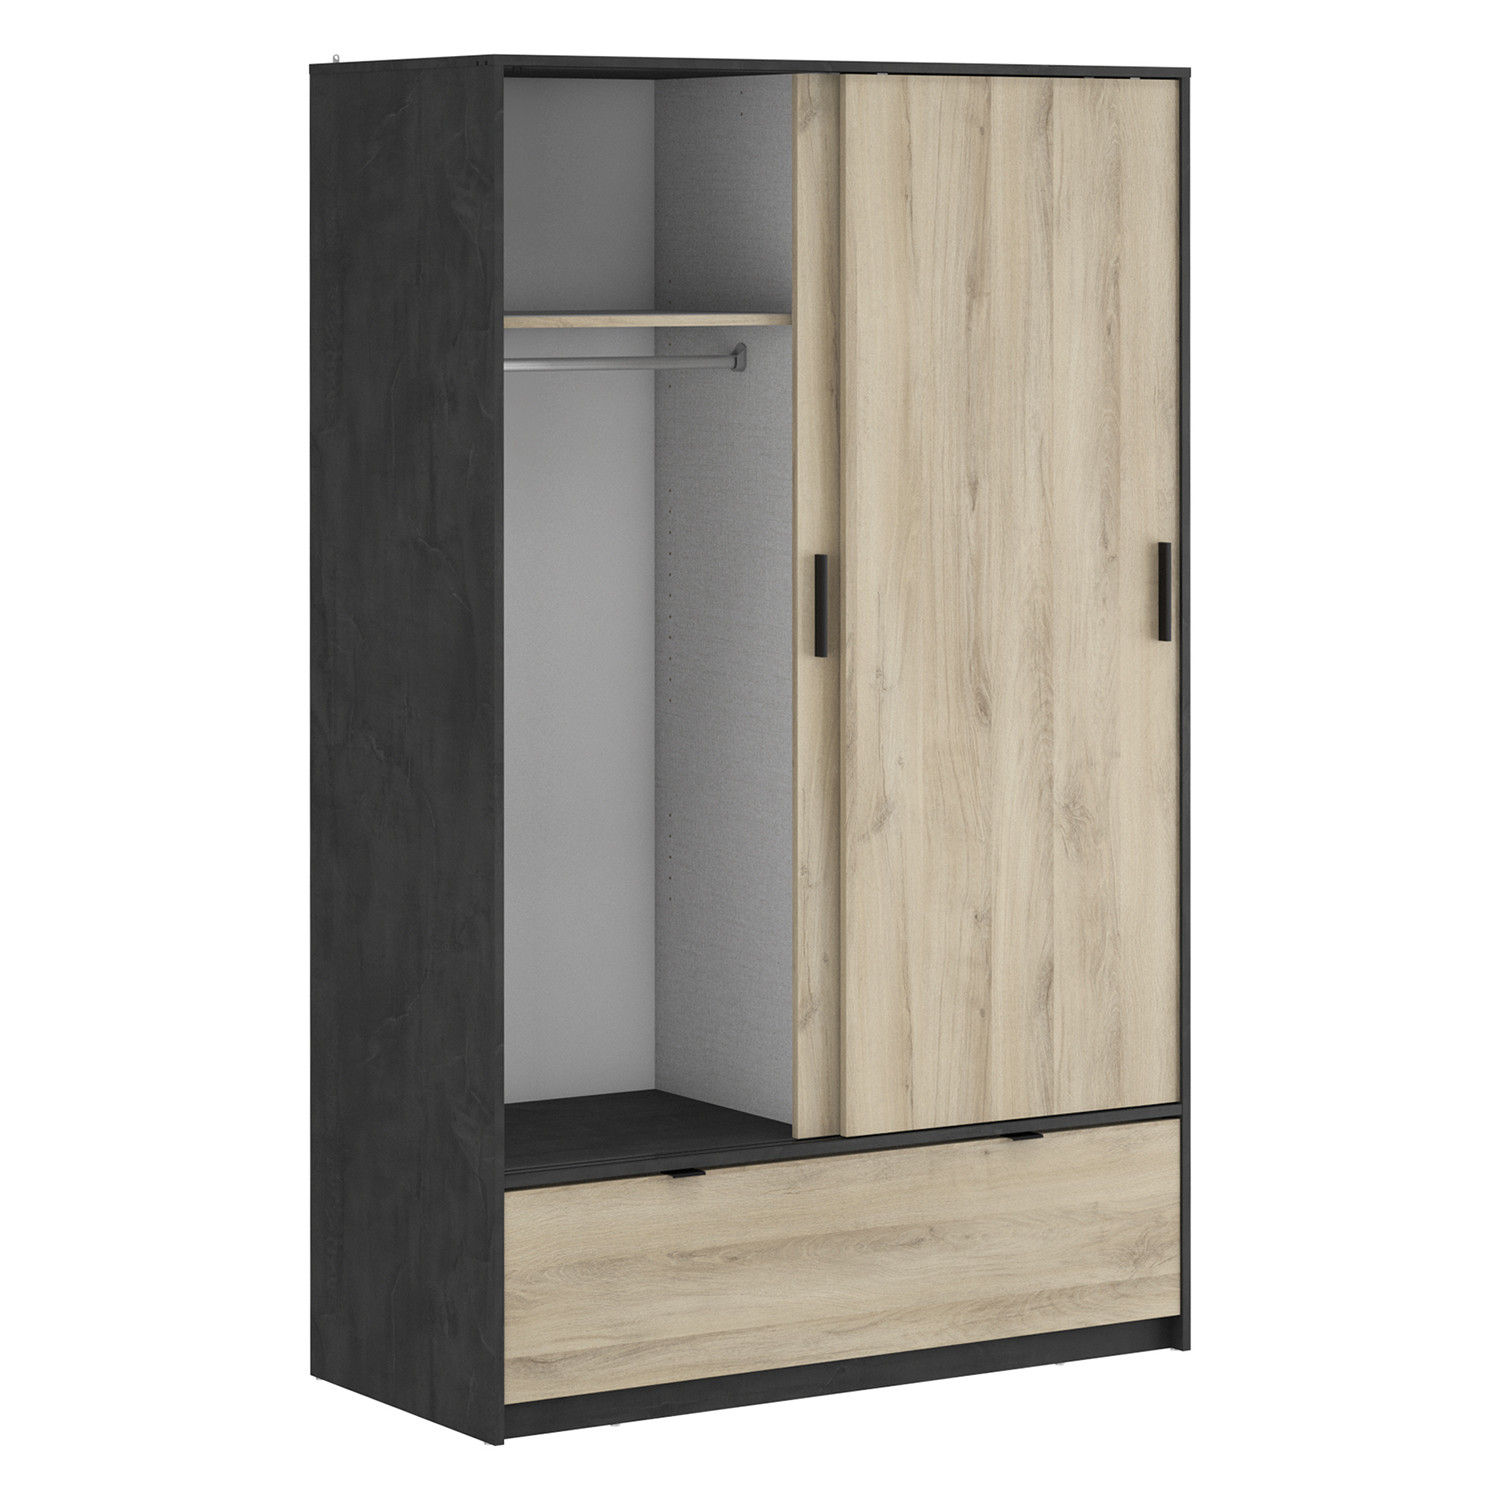 IDEA Шкаф с раздвижными дверями PERFECT дуб/черный антик